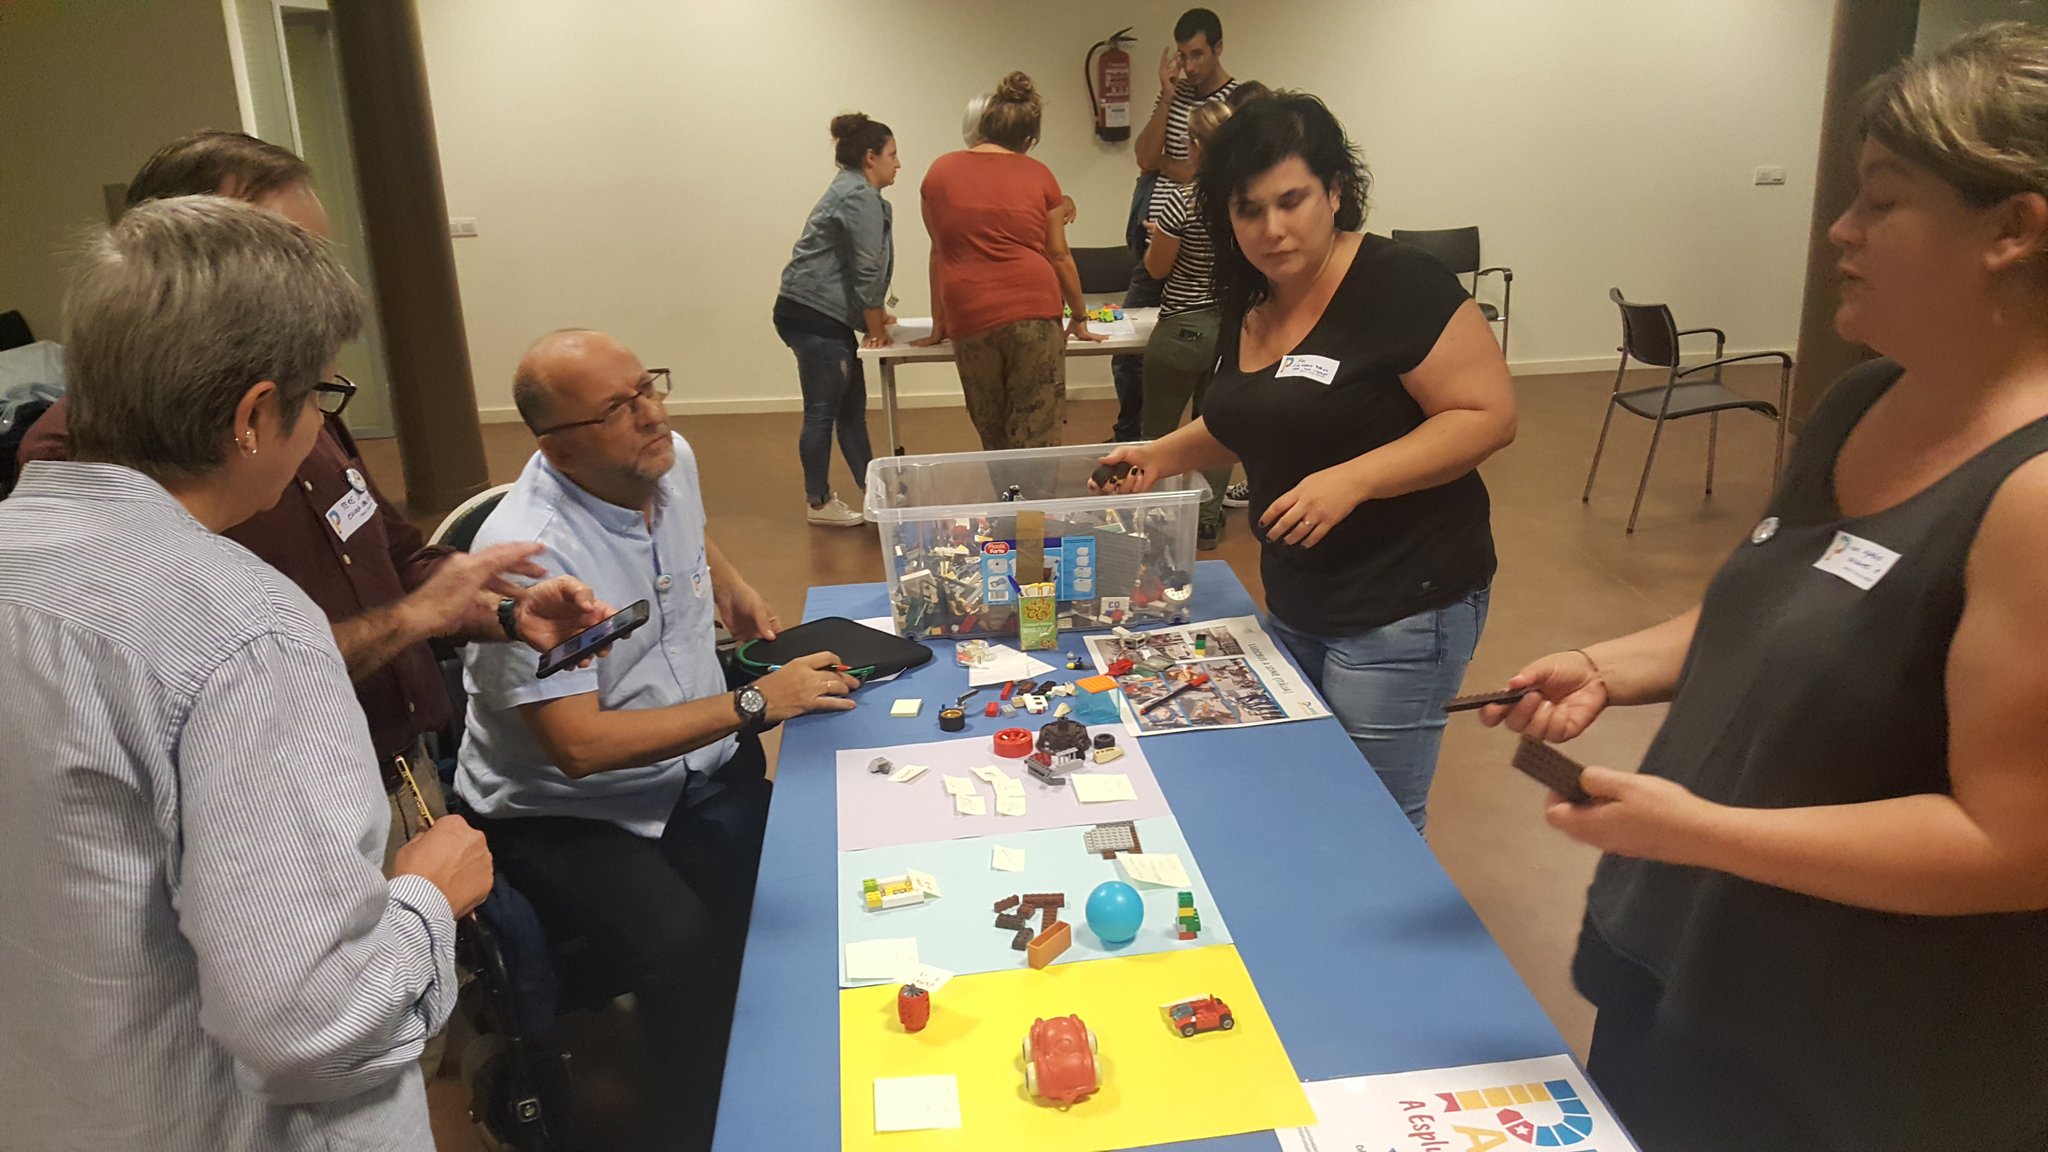 Esplugues de Llobregat ULG Meeting in October 2019 - Workshop